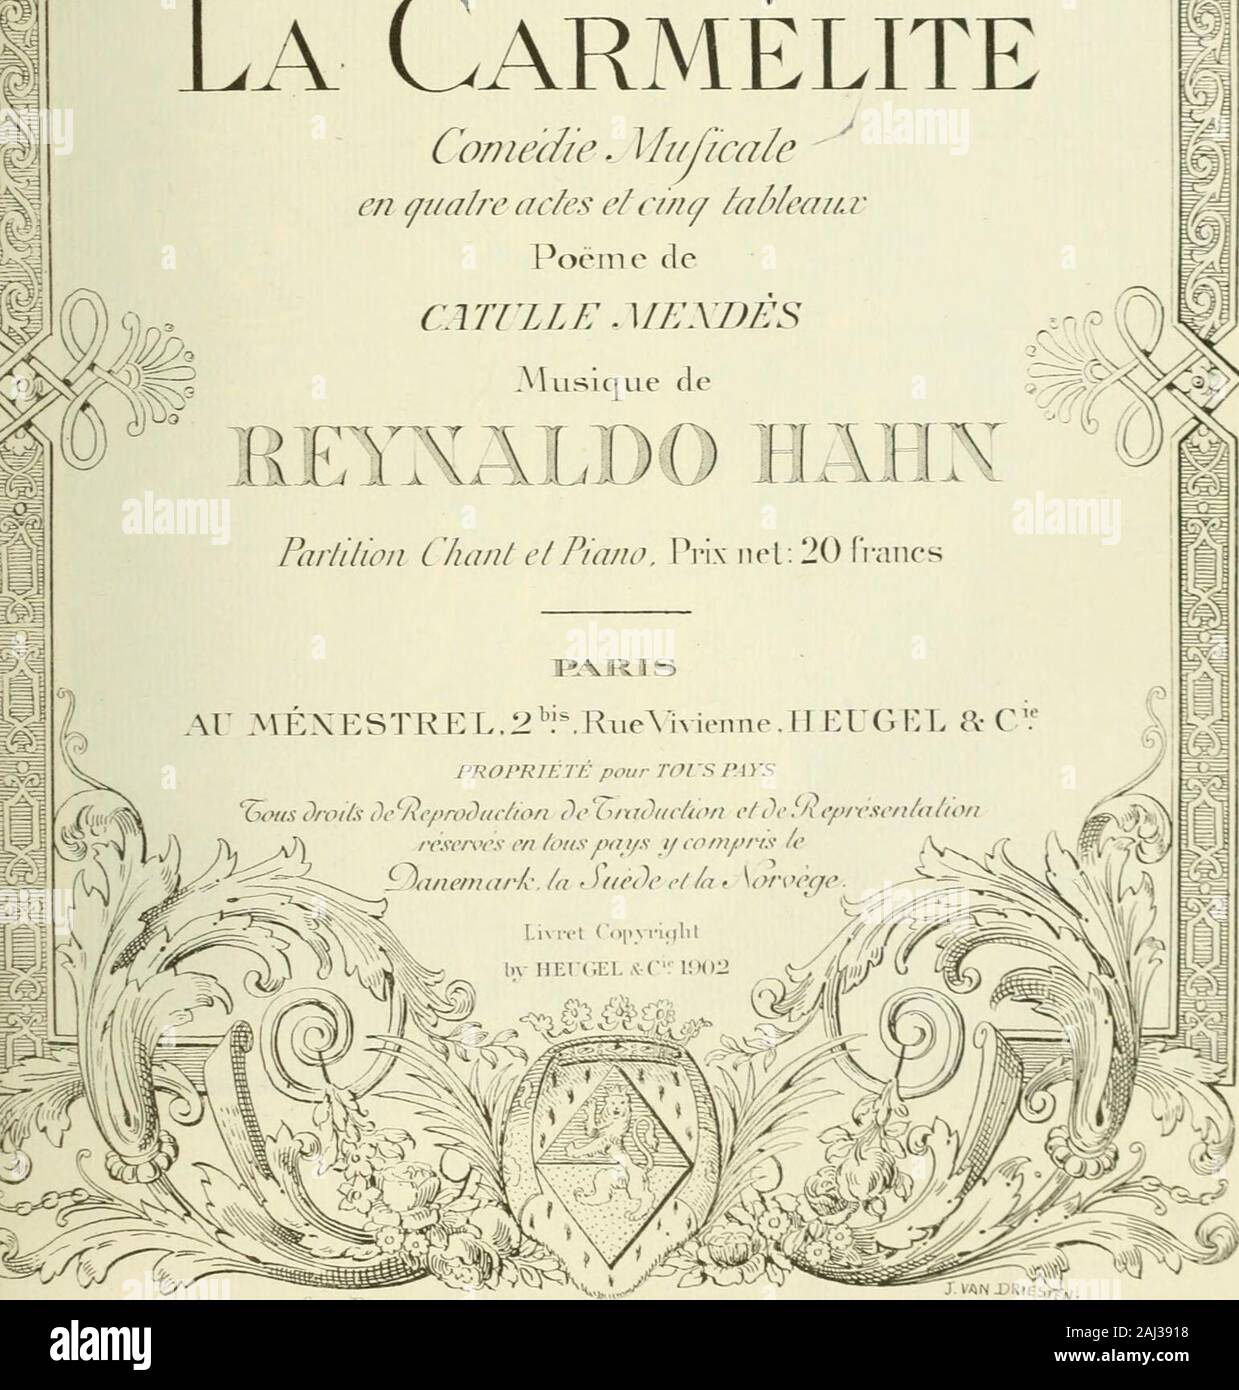 La carmÃ©lite ; comÃ©die musicale en quatre actes et cinq tableaux PoÃ"me de Catulle MendÃ¨s . ¢Â"â ¢ liii|.. l)&gt;liiiMhj. K ? S ; II-III, Kl 0 r. f)nuin, f)r. ^^^J II Itli^A sj&gt;im.-^ J , J'L.U J 1 M9 ISJ Reynaldo Hahn, 1503 ^La carmÃ©lite. Chant-Piano H155C3. Le français,La carmÃ©lite Musk VEUILLEZ NE PAS REMOVECARDS OU FEUILLETS DE CETTE POCHE Bibliothèque de l'UNIVERSITÉ DE TORONTO. TiS^A.-f^ty. ^^r iAV. ^^J./ iP. 1505HL55cb fÃ ^KA13 NOV 1958 Banque D'Images